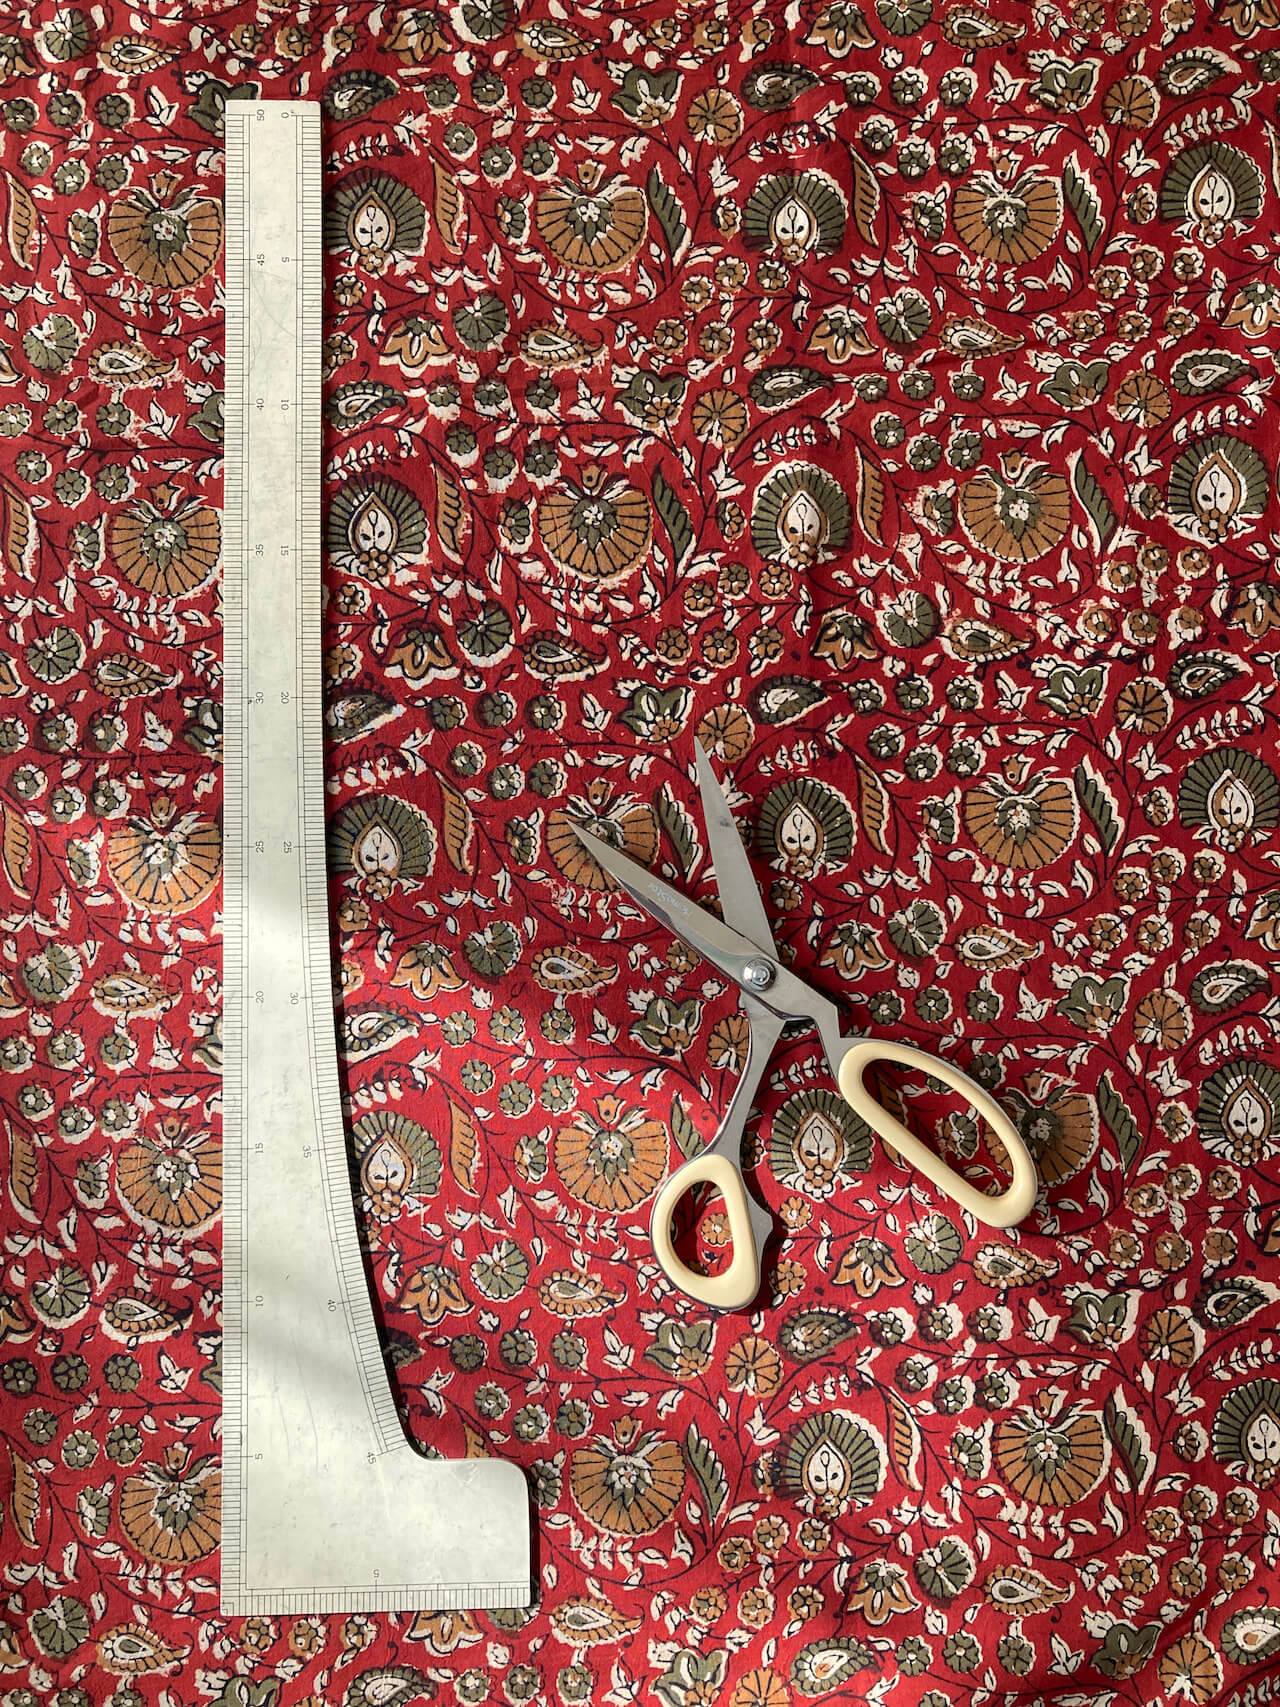 【PRE-CUT 35cm】India Natural Dye Bagru Hand Block Printed Fabric #151-9